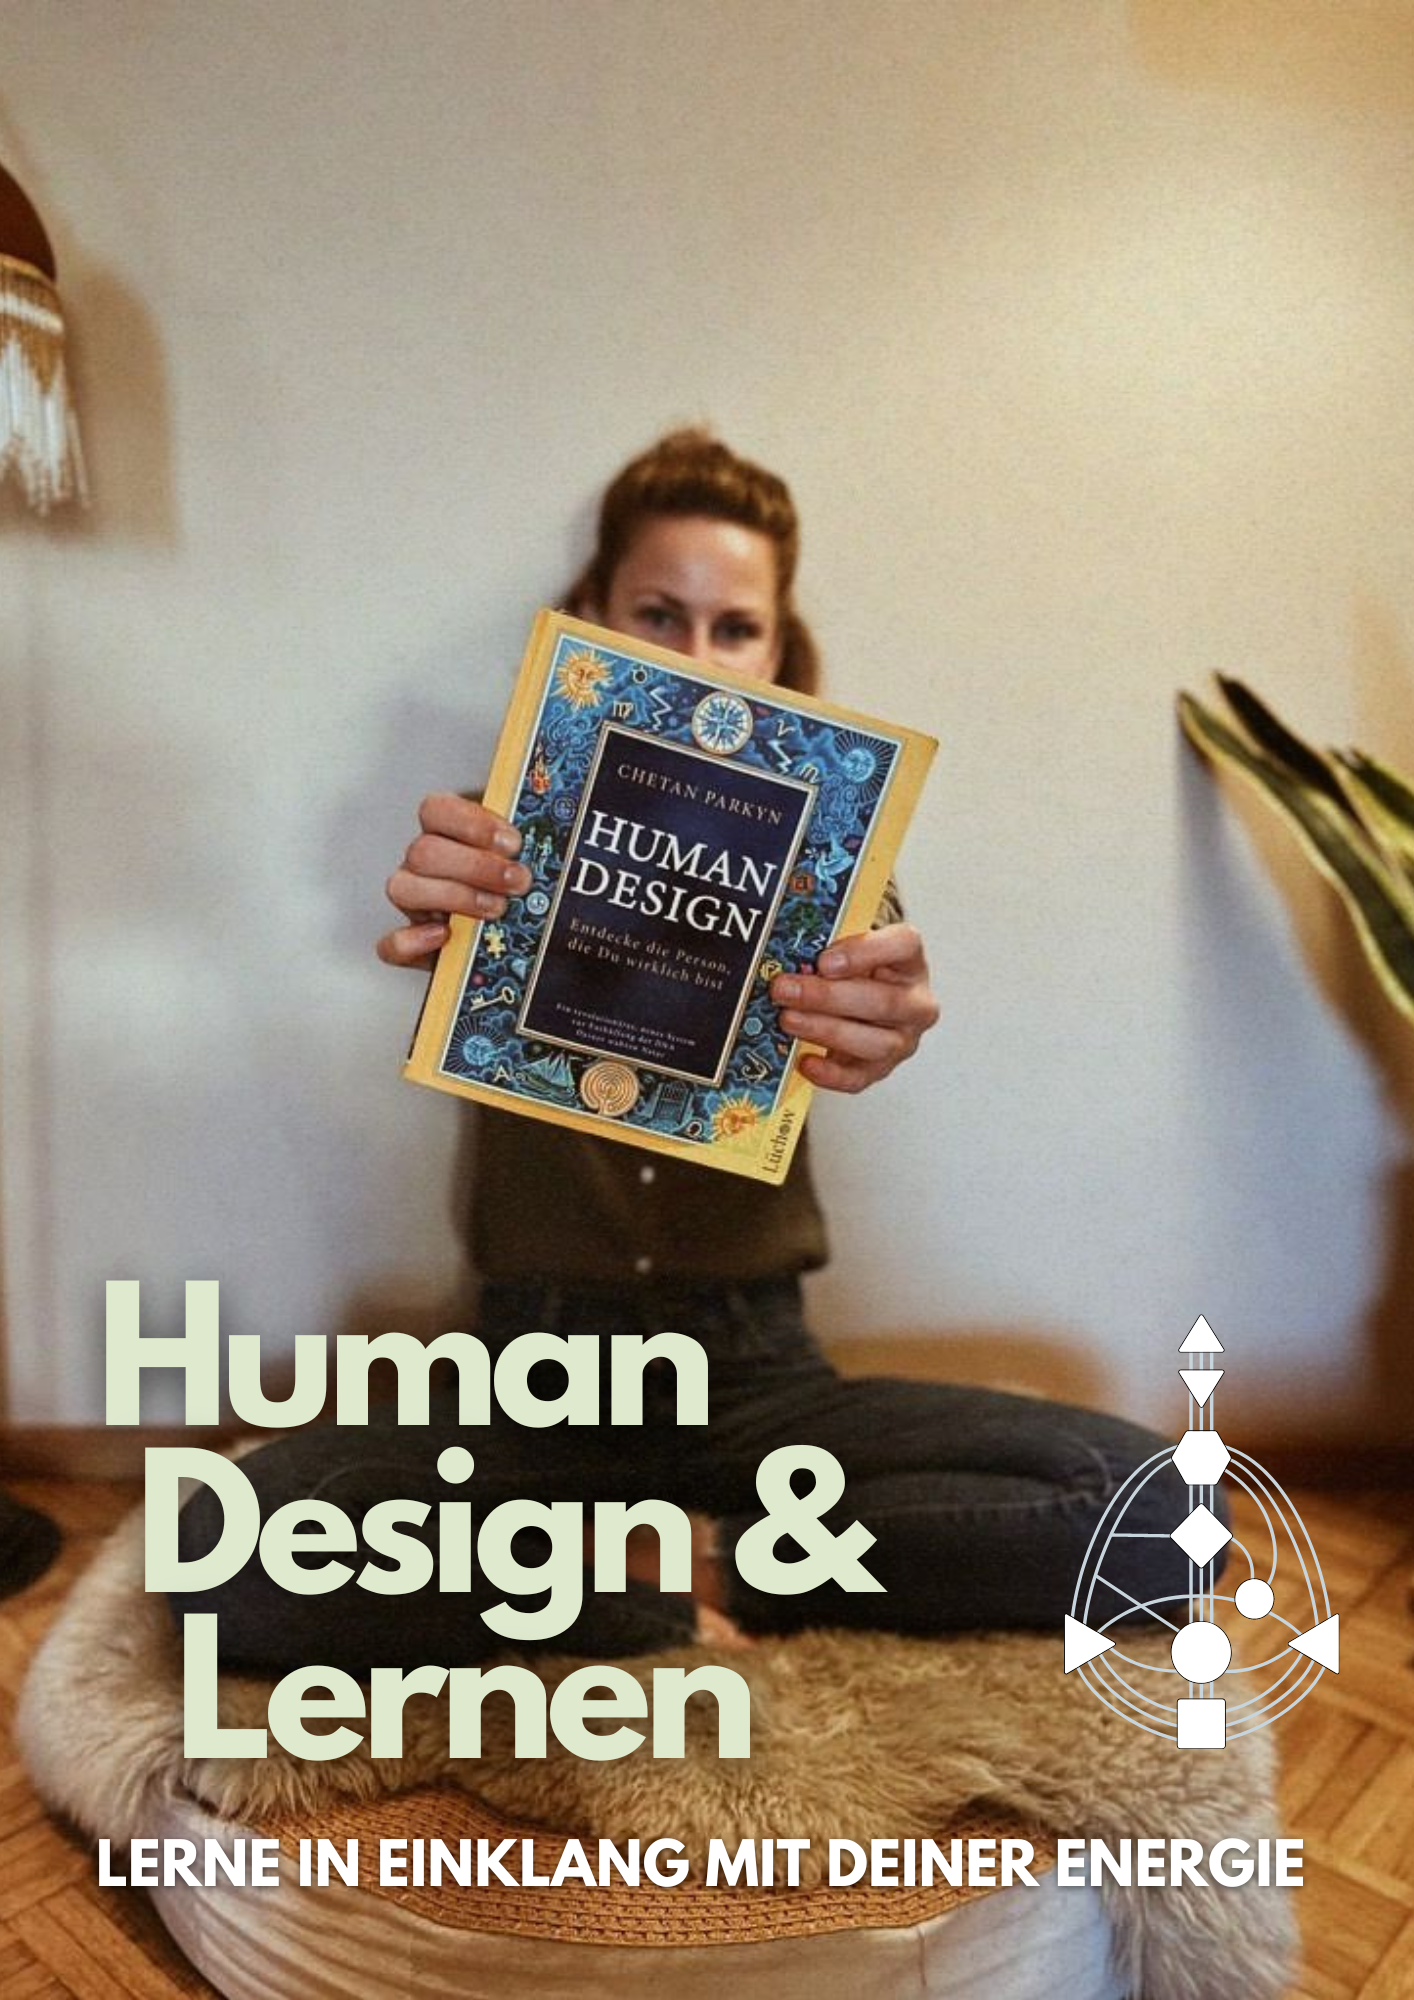 Human Design & Lernen, Französisch Onlinekurs für Beginner im Human Design Shop